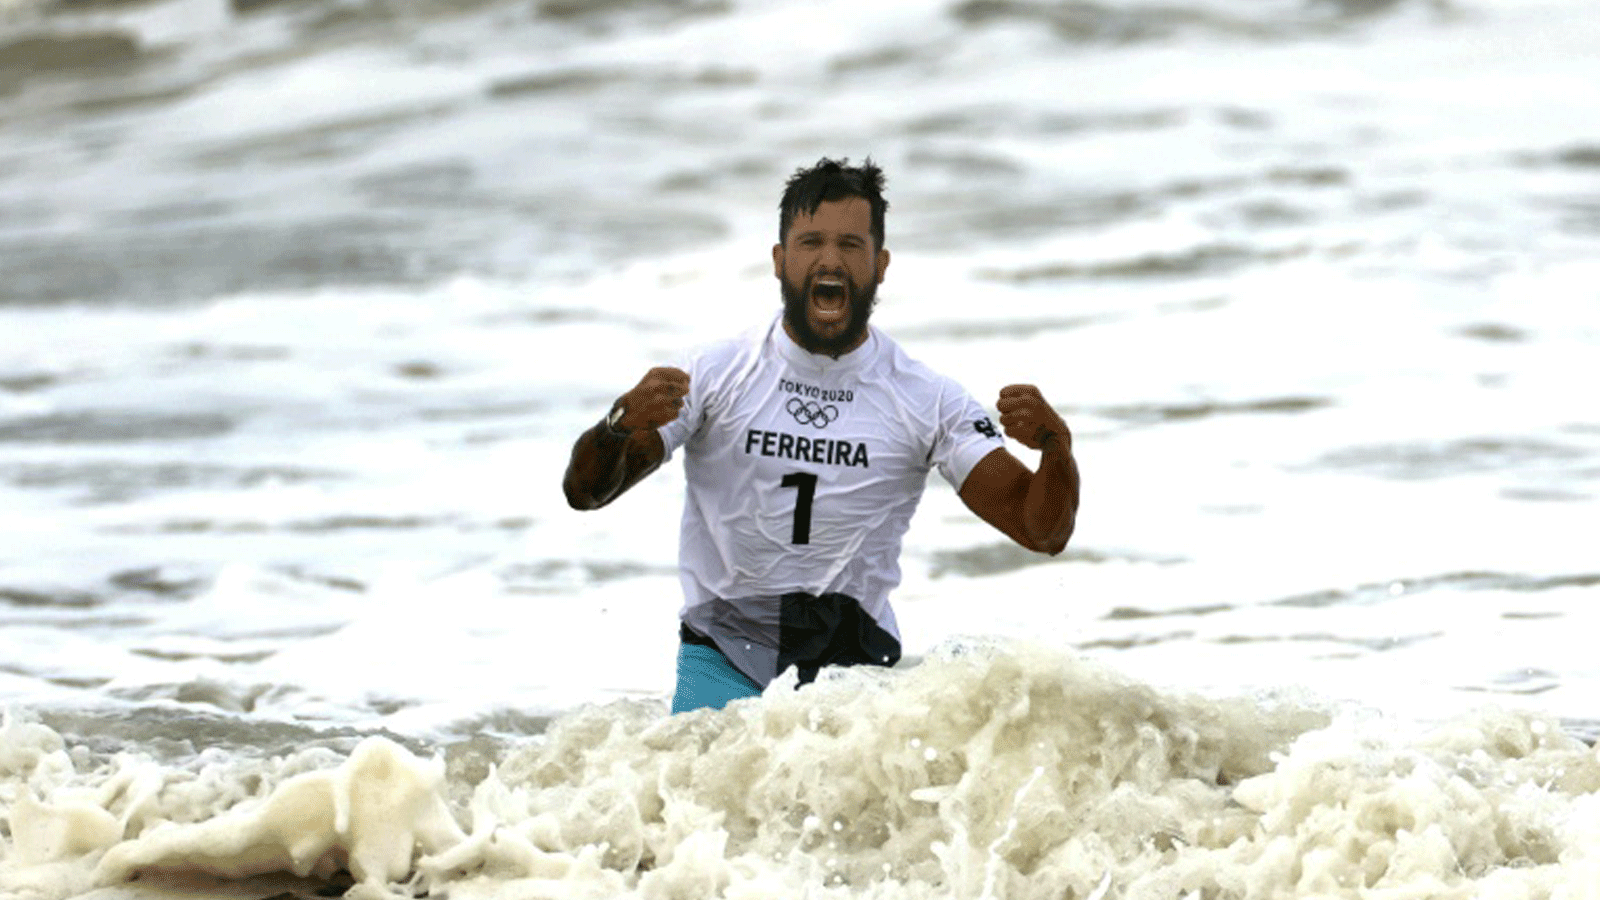 البرازيلي إيتالو فيريرا أول بطل أولمبي في رياضة ركوب الأمواج بعد فوزه بالميدالية الذهبية في أولمبياد طوكيو في 27 تموز/يوليو 2021